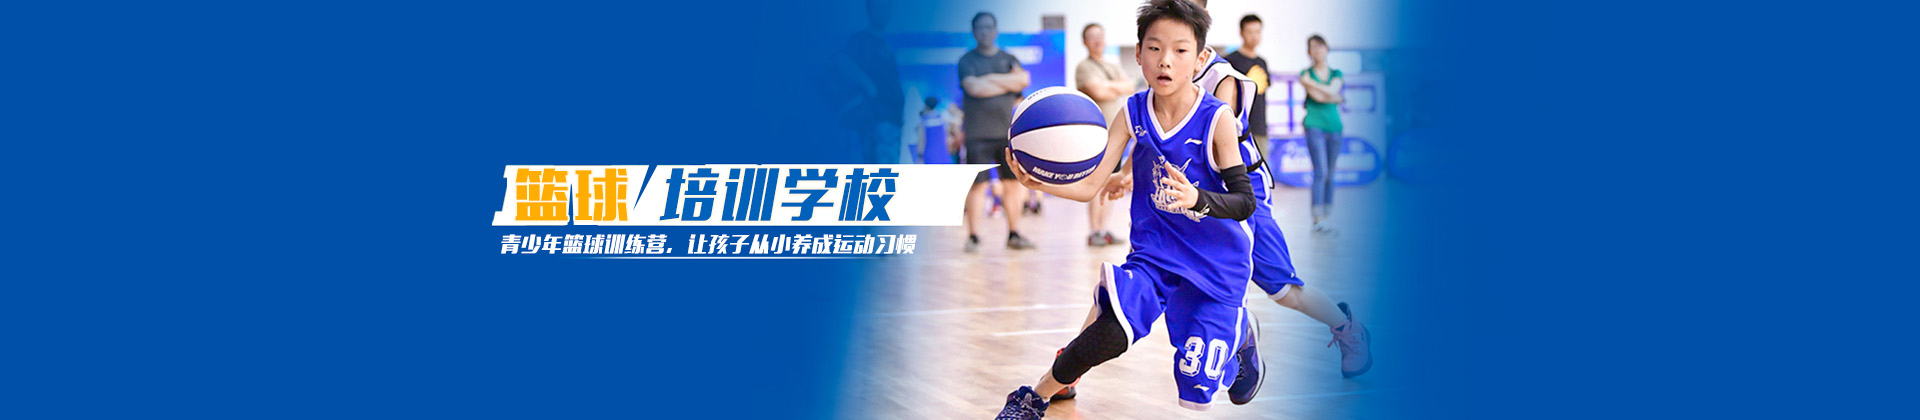 北京东方启明星篮球学校